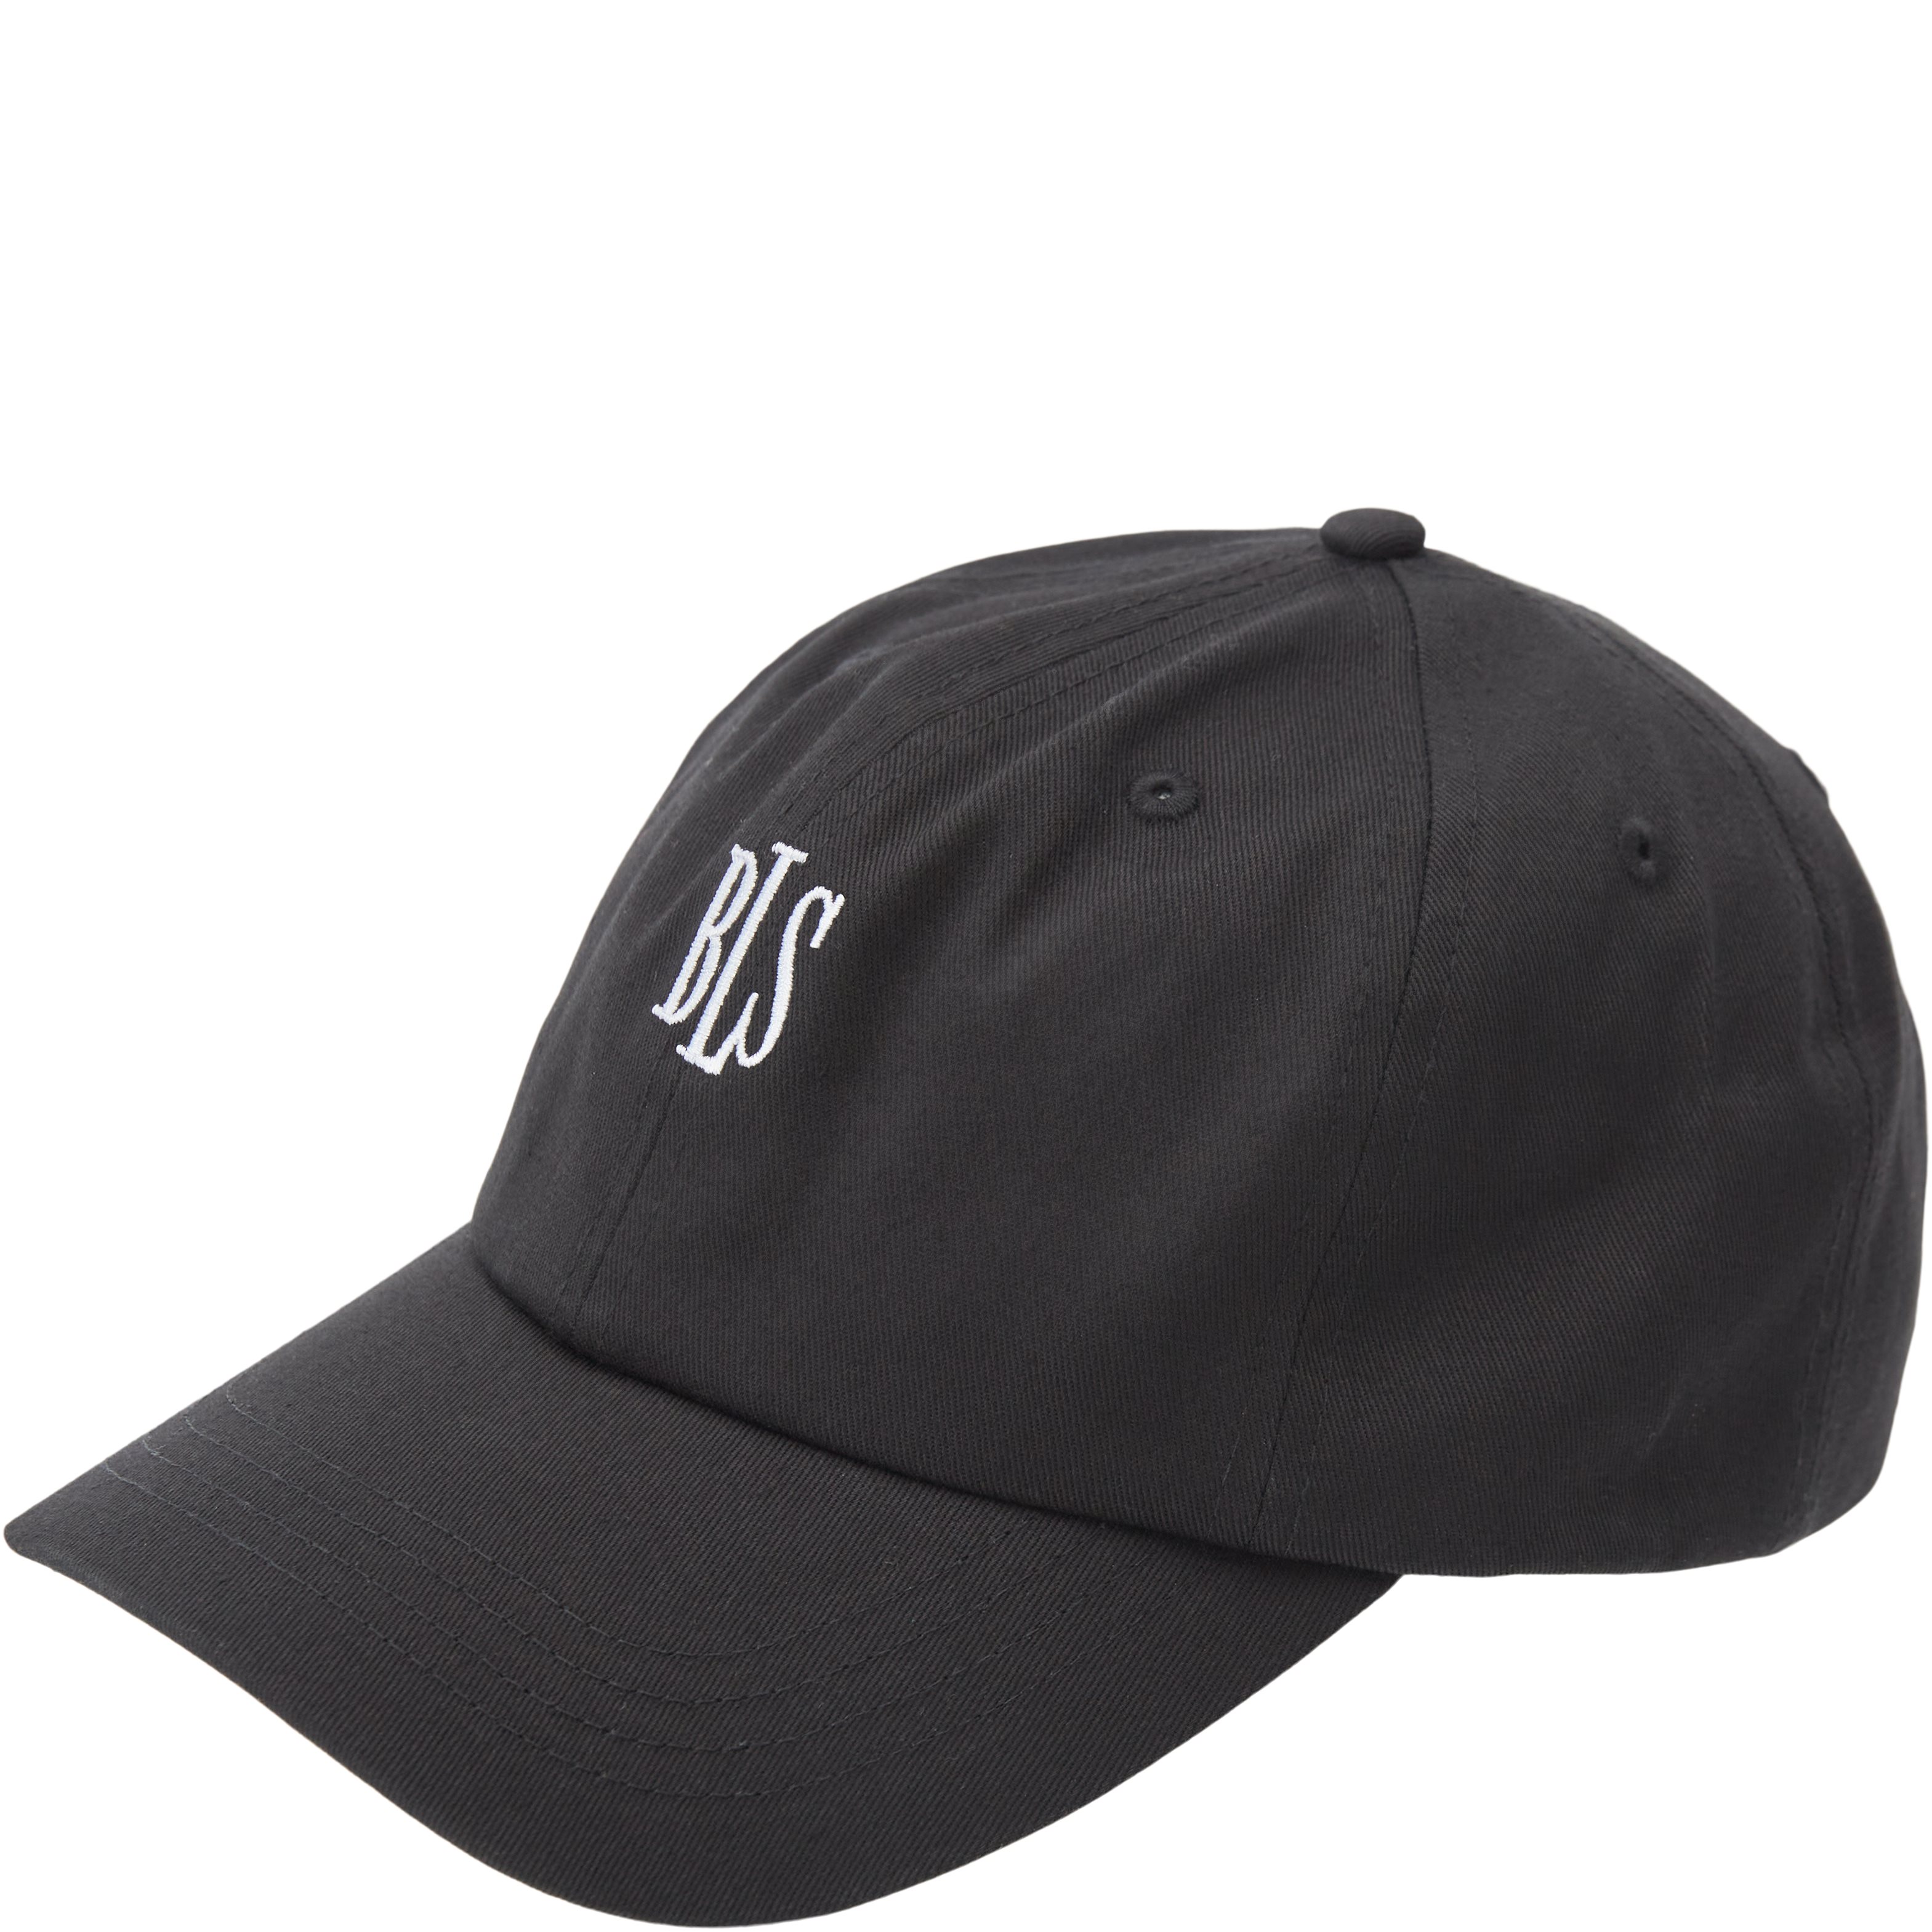 BLS Caps PAPI CAP AW19104 Black